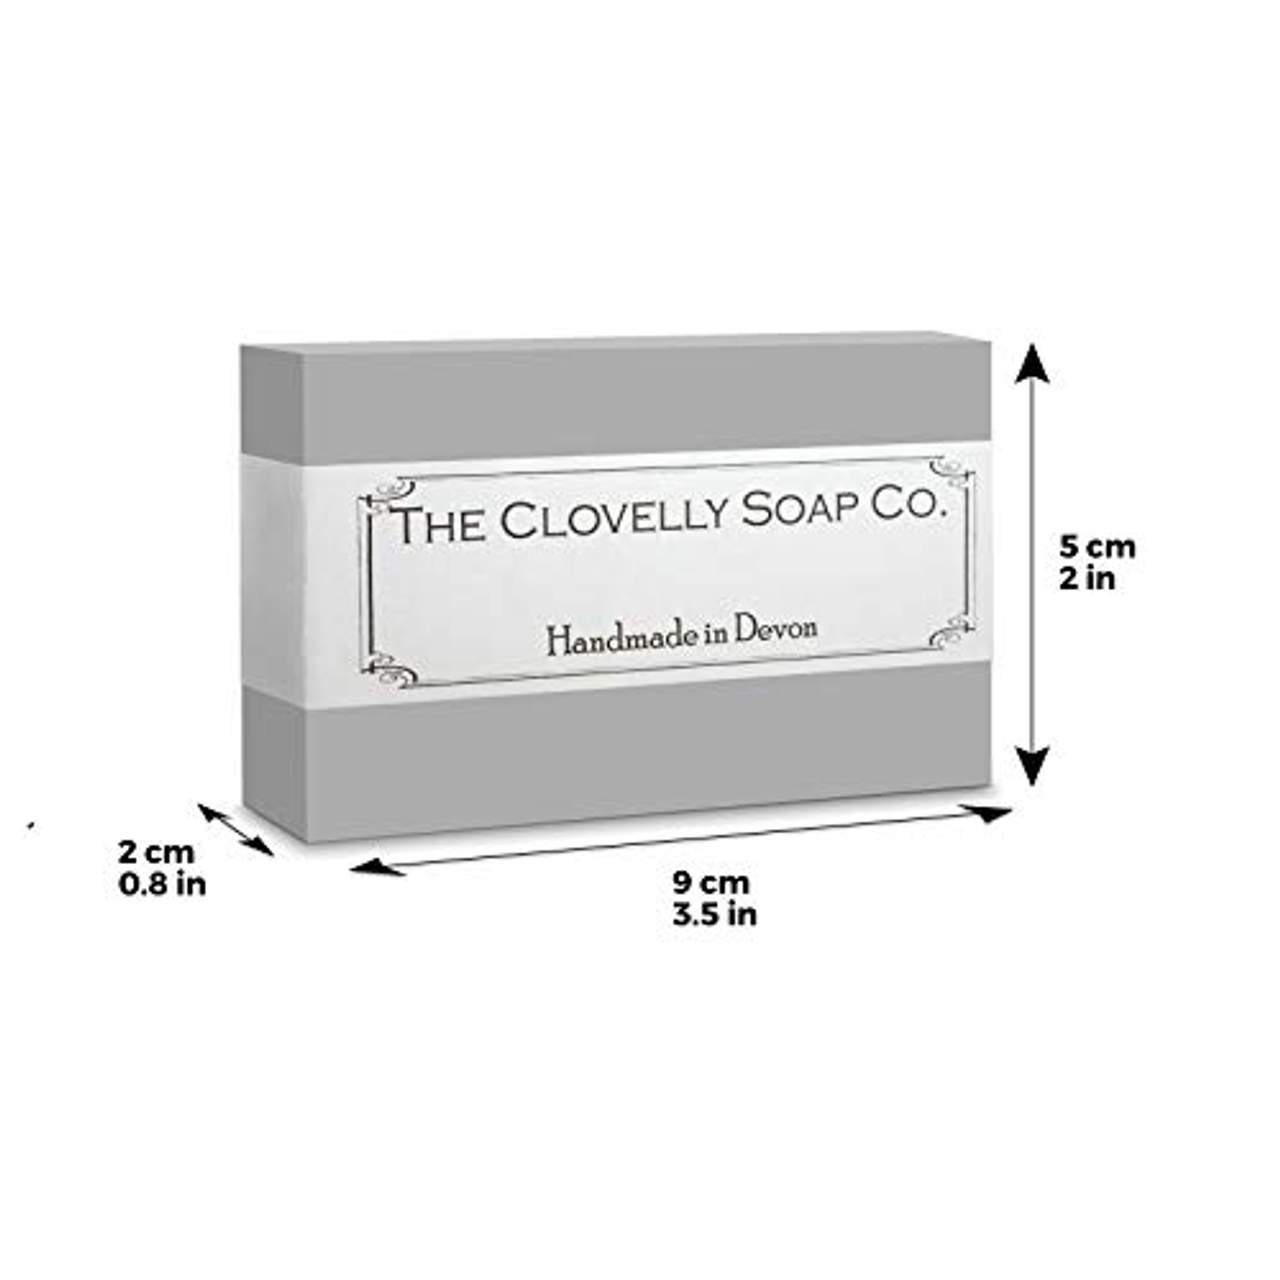 Clovelly Soap Co Natürliche handgemachte Seife Patschuli & Orange